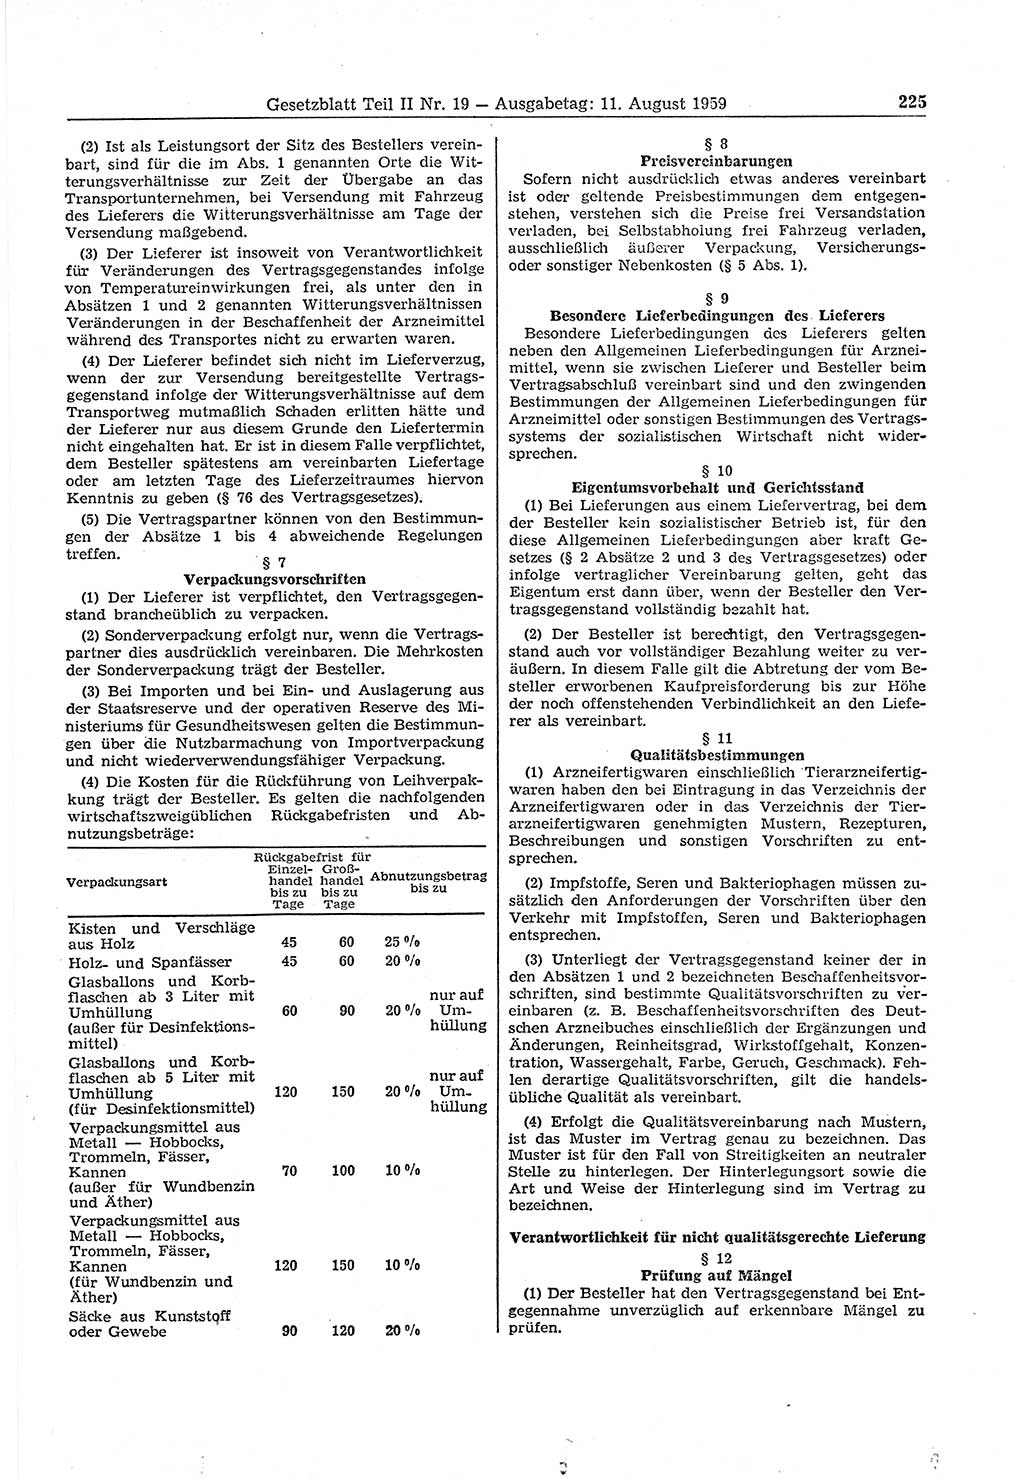 Gesetzblatt (GBl.) der Deutschen Demokratischen Republik (DDR) Teil ⅠⅠ 1959, Seite 225 (GBl. DDR ⅠⅠ 1959, S. 225)